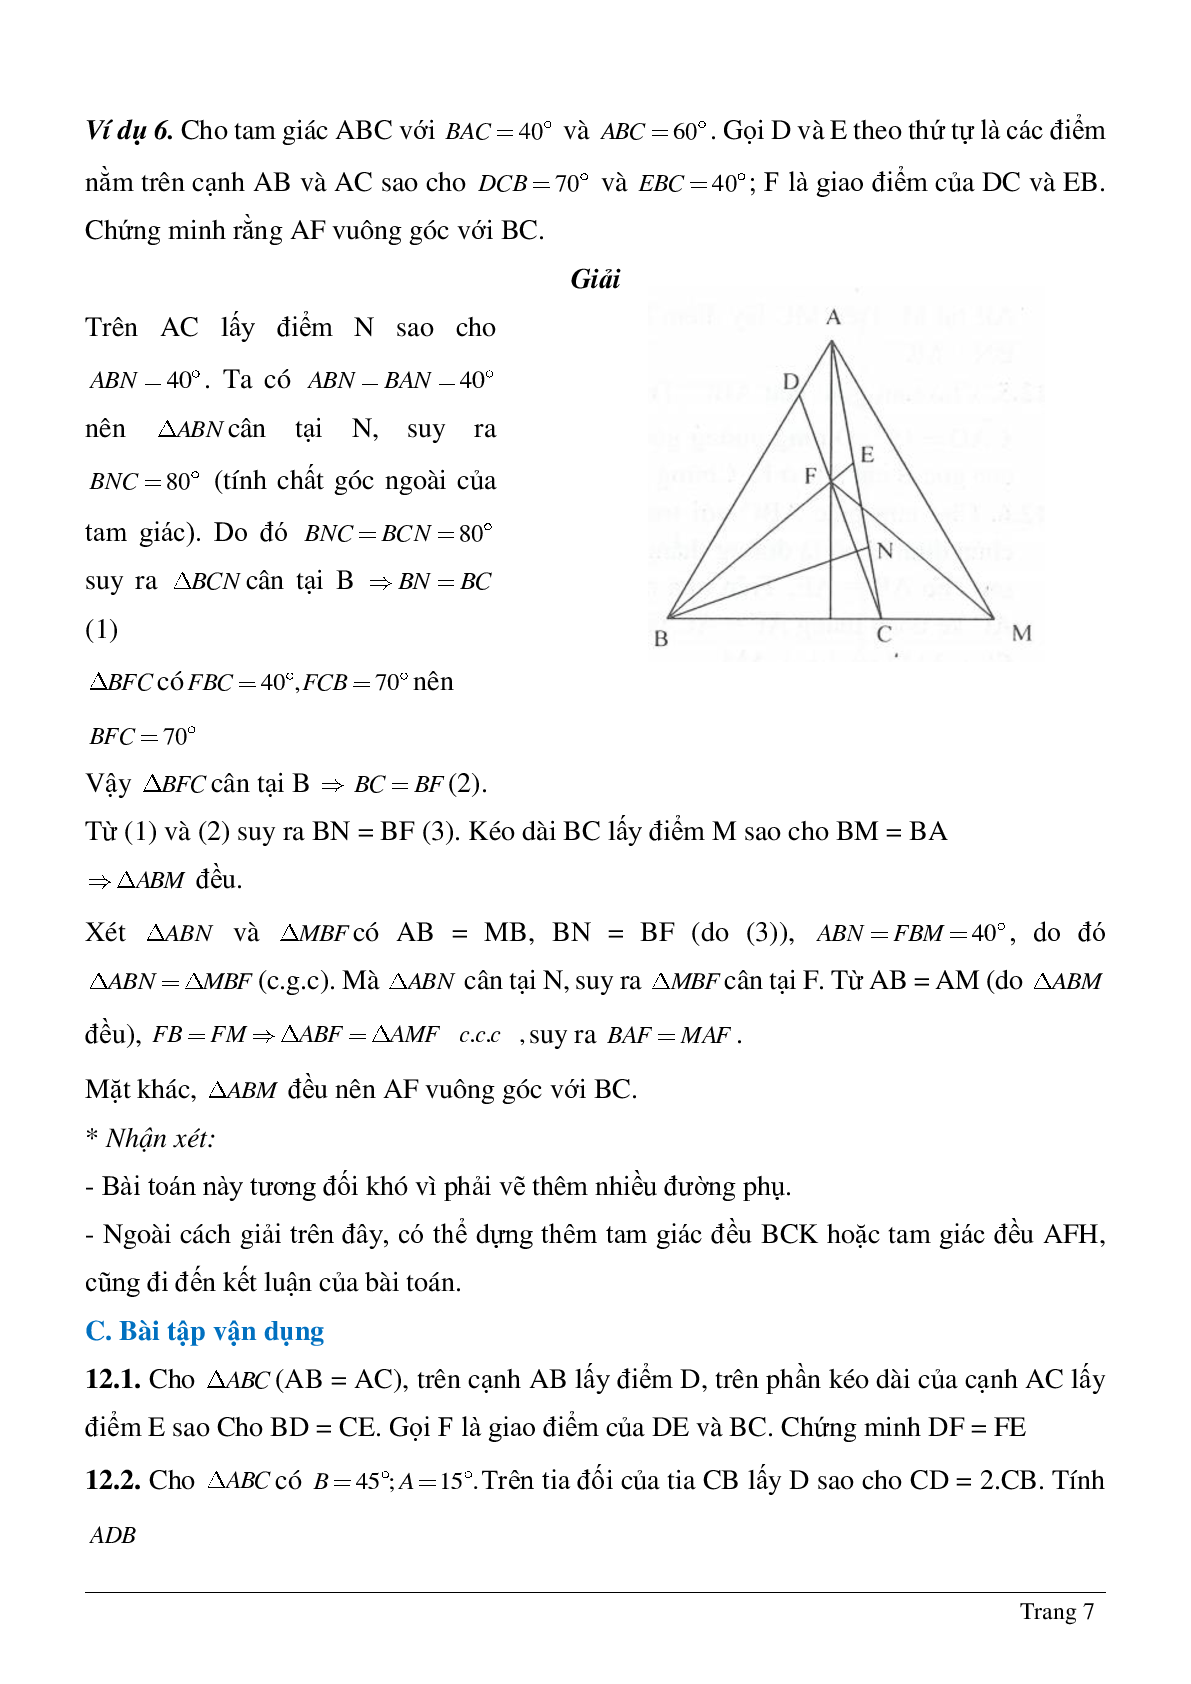 Phương pháp giải về Vẽ hình phụ để giải các bài toán hình học có lời giải (trang 7)